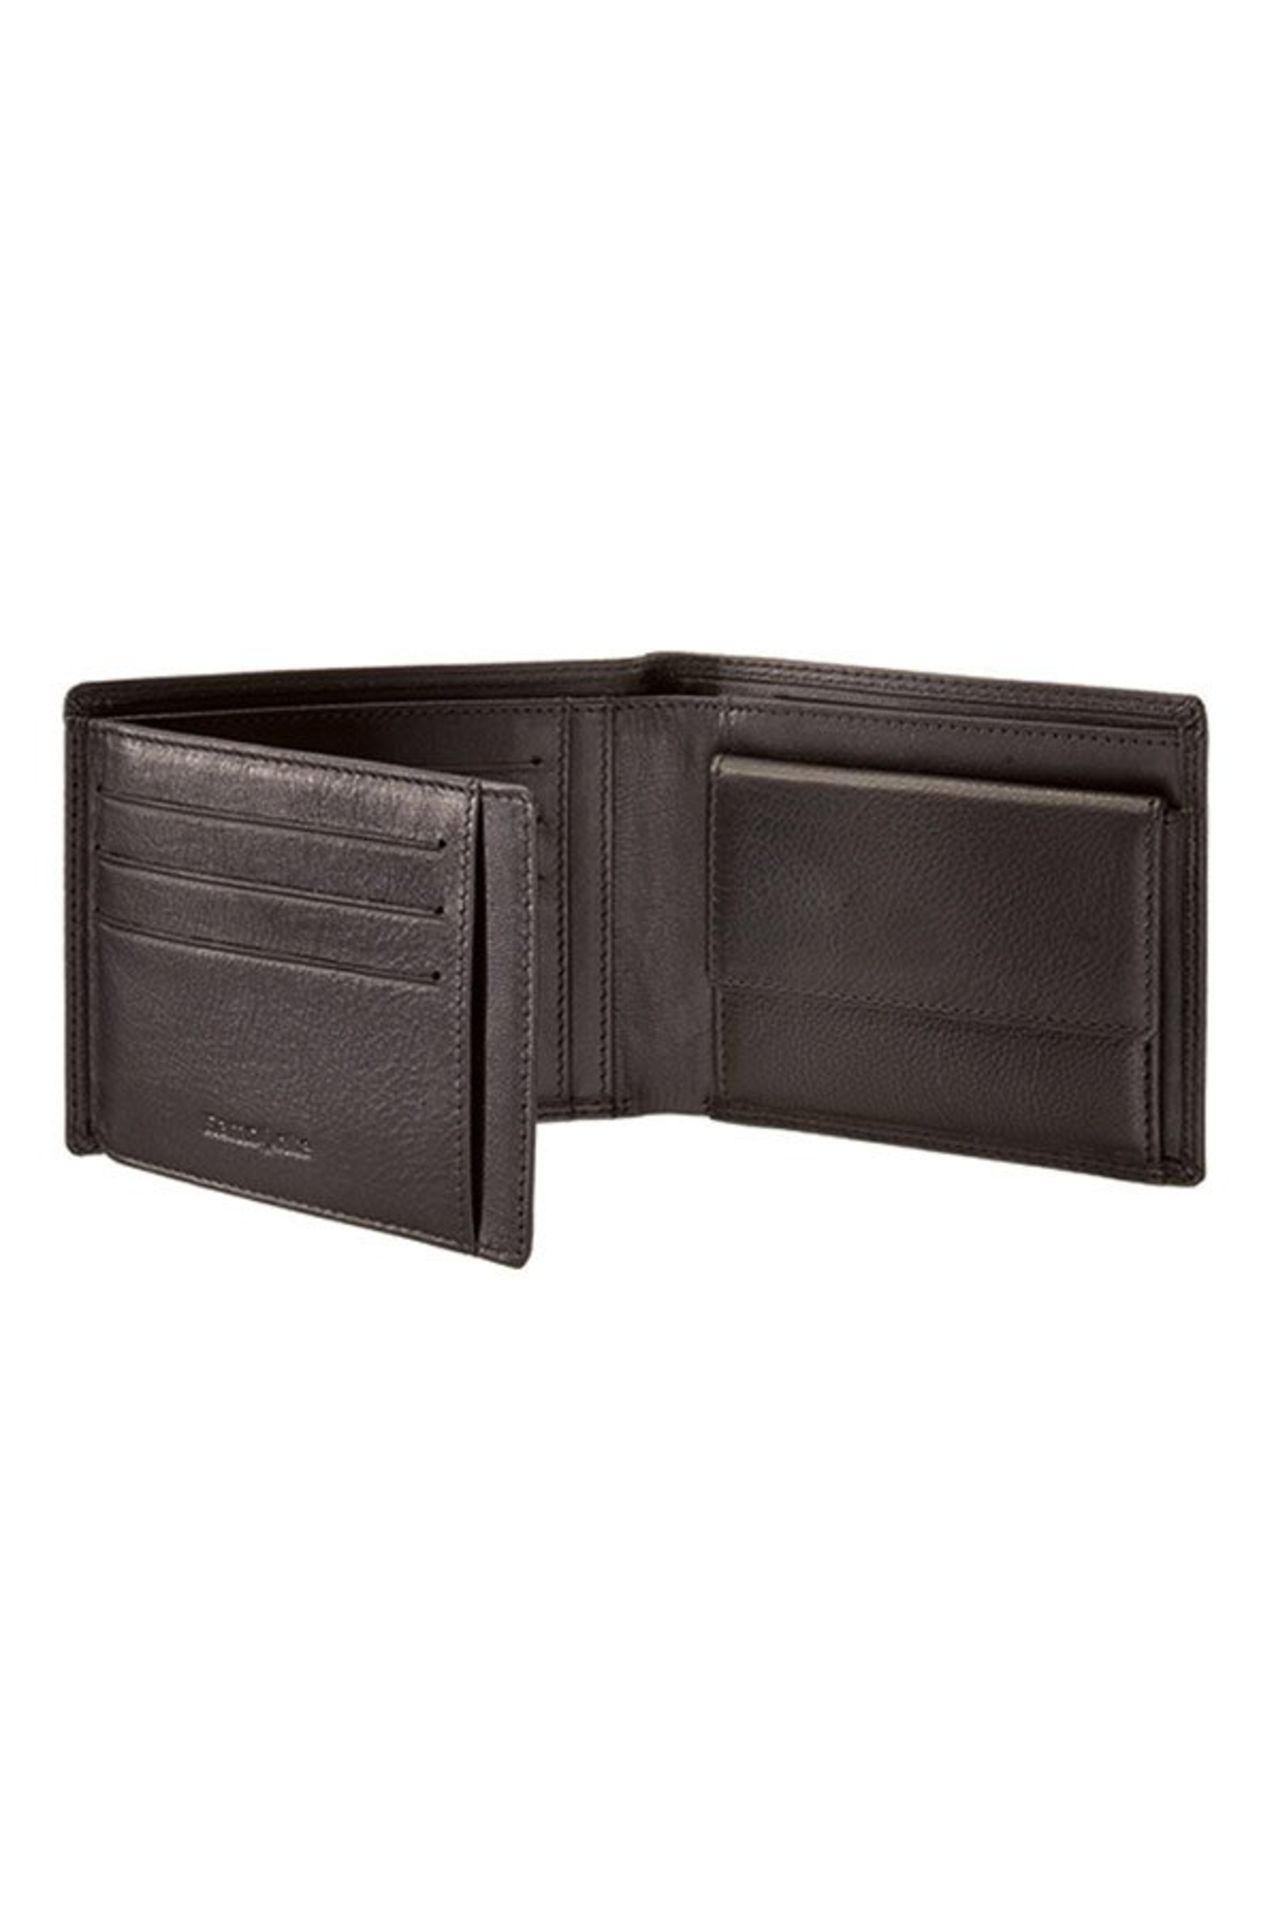 + VAT Brand New Samsonite Gents Black Leather Wallet - 3 Credit Card Slots - Zip Pocket Section - 2